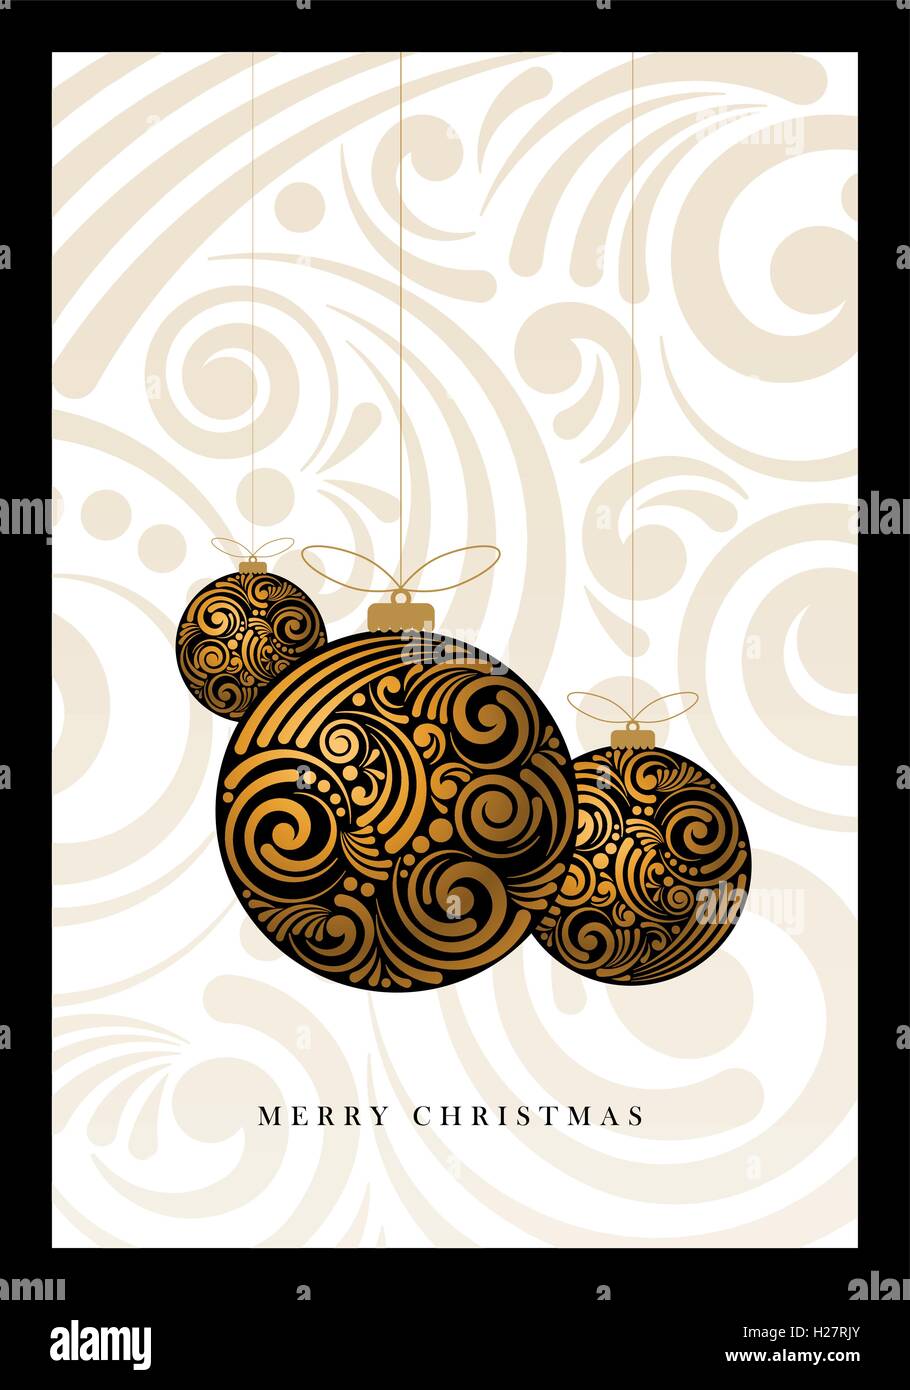 Vektor-Weihnachtsgrußkarte mit abstrakten Wirbel Weihnachtskugeln. Stock Vektor